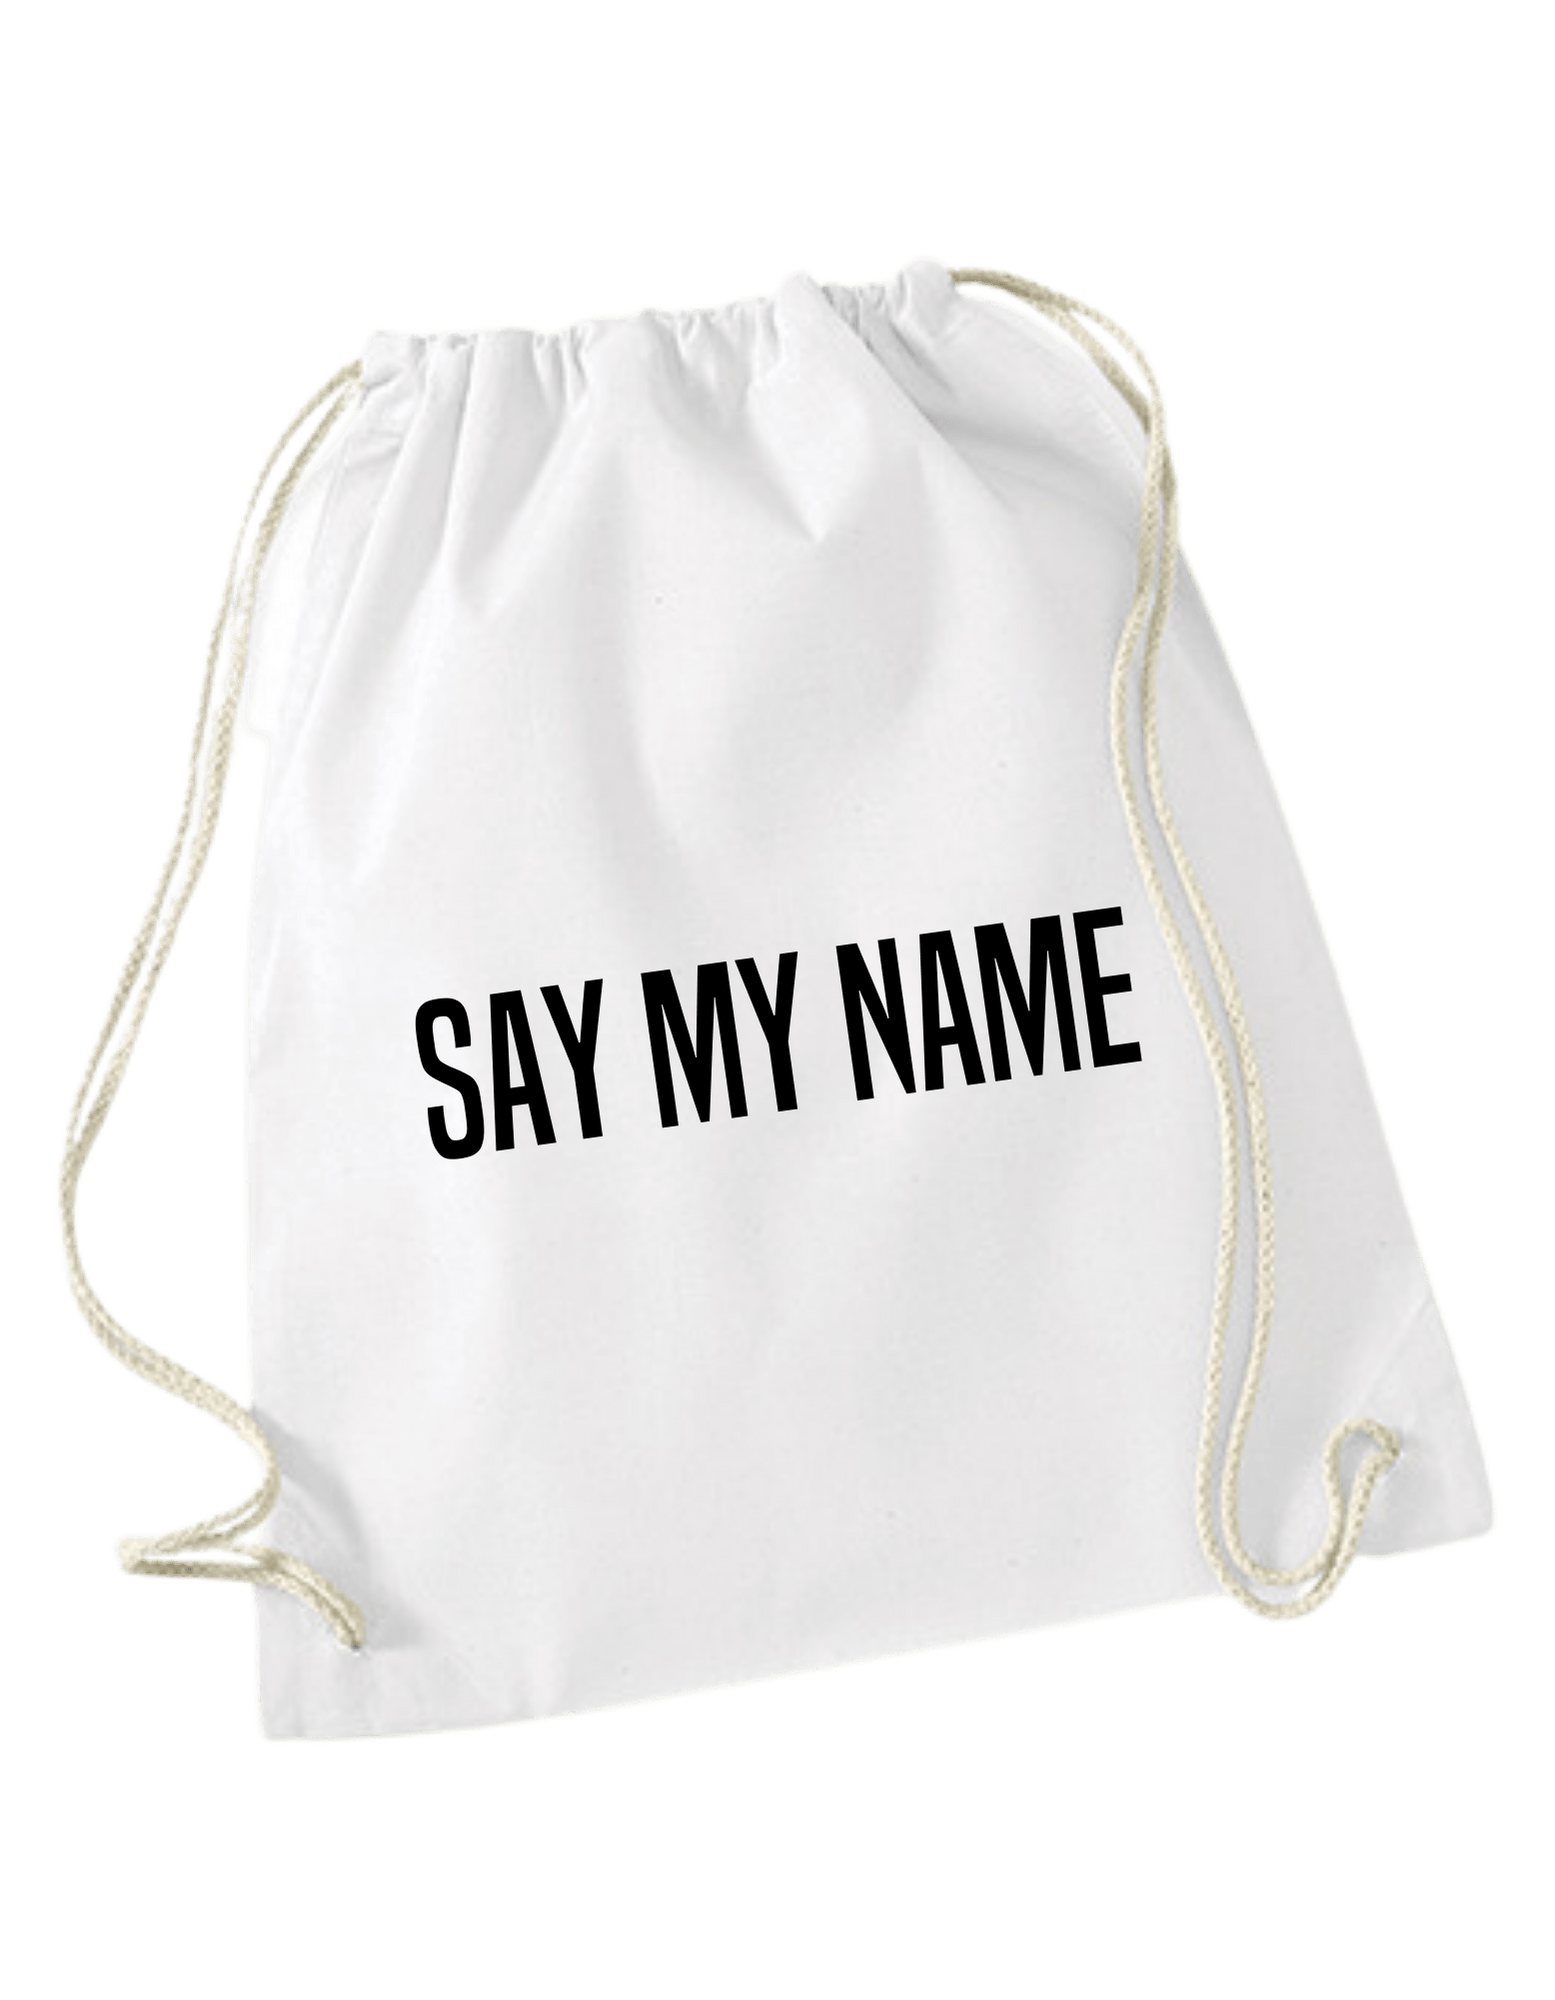 Le sac de gym "Say My Name" est un sac polyvalent et pratique pour vos séances de sport ou vos déplacements quotidiens. 